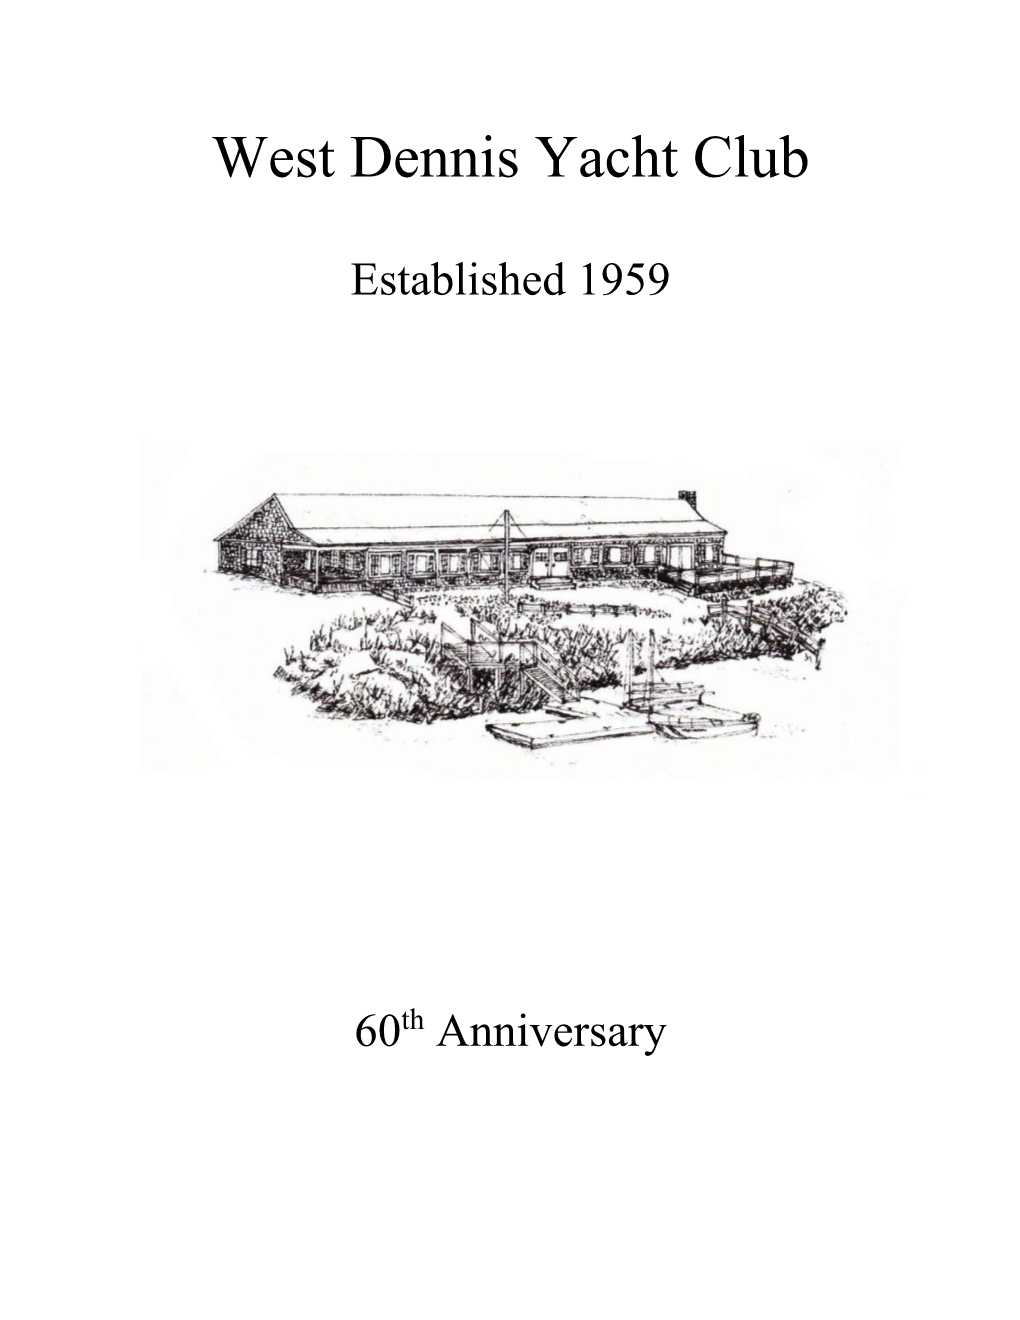 West Dennis Yacht Club